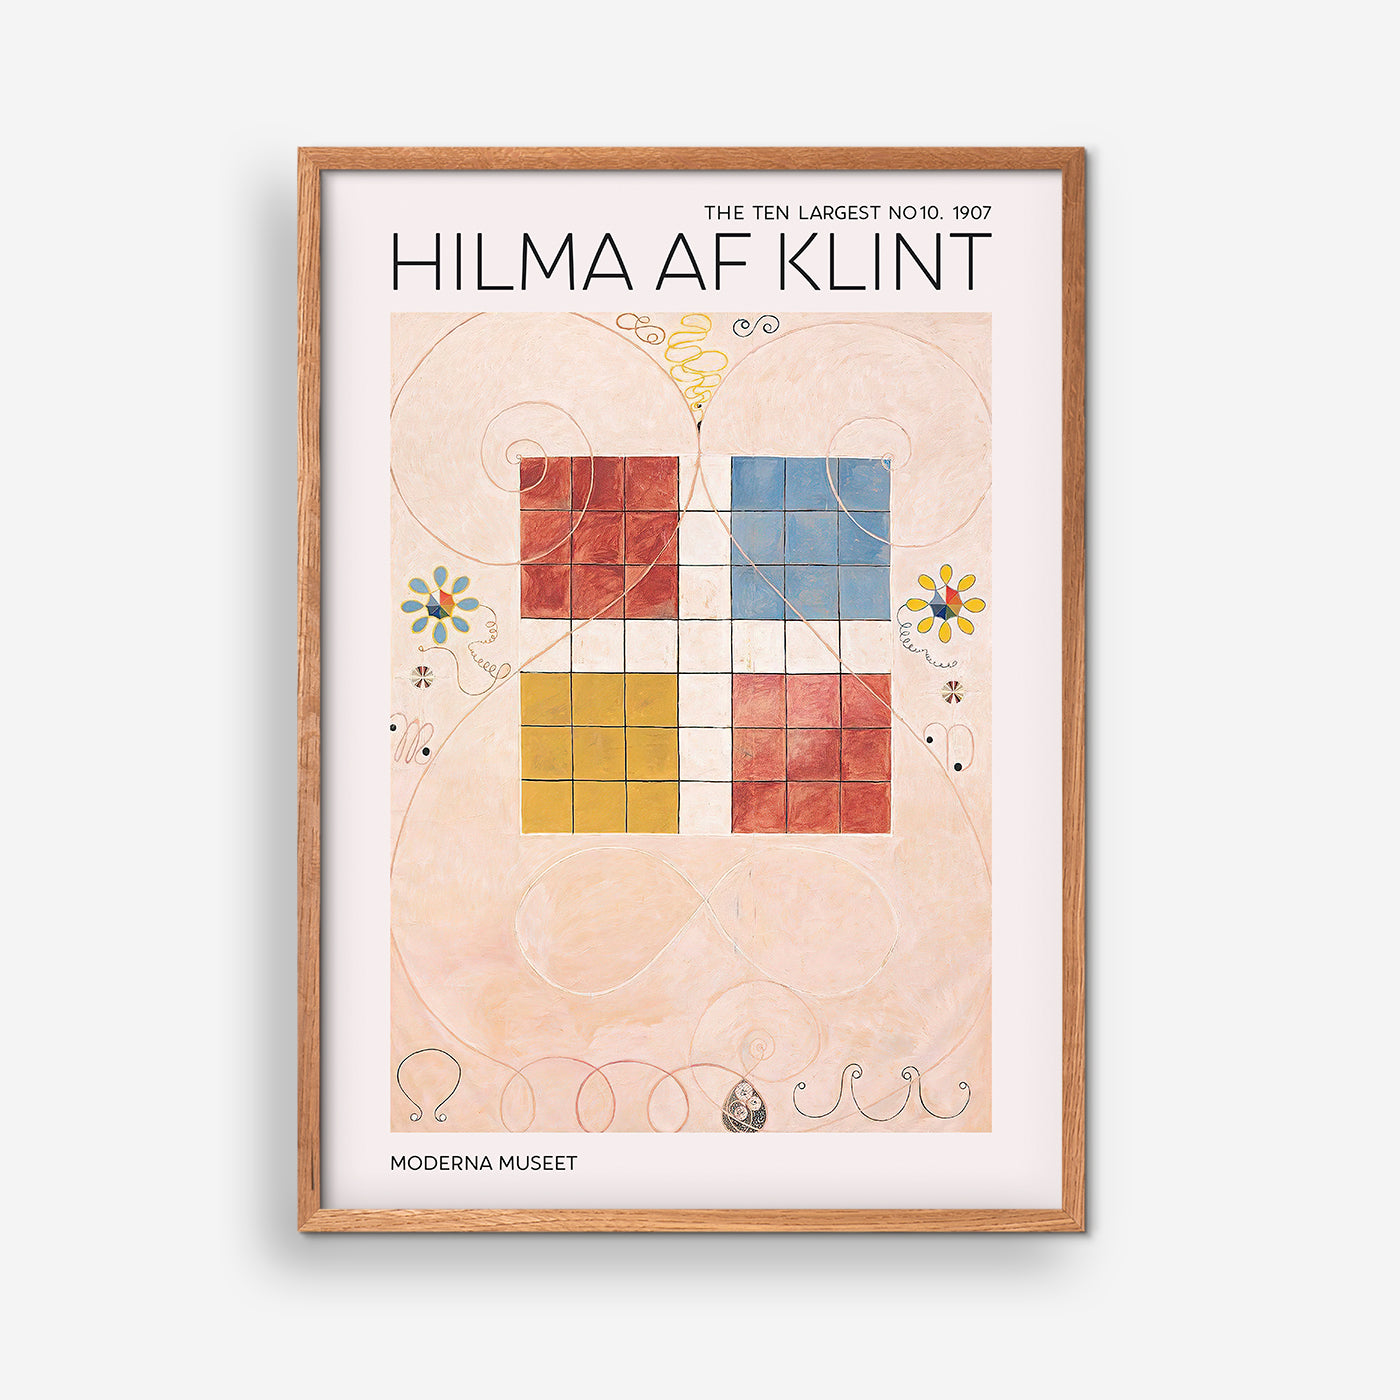 The Ten Largest No. 10 - Hilma Af Klint